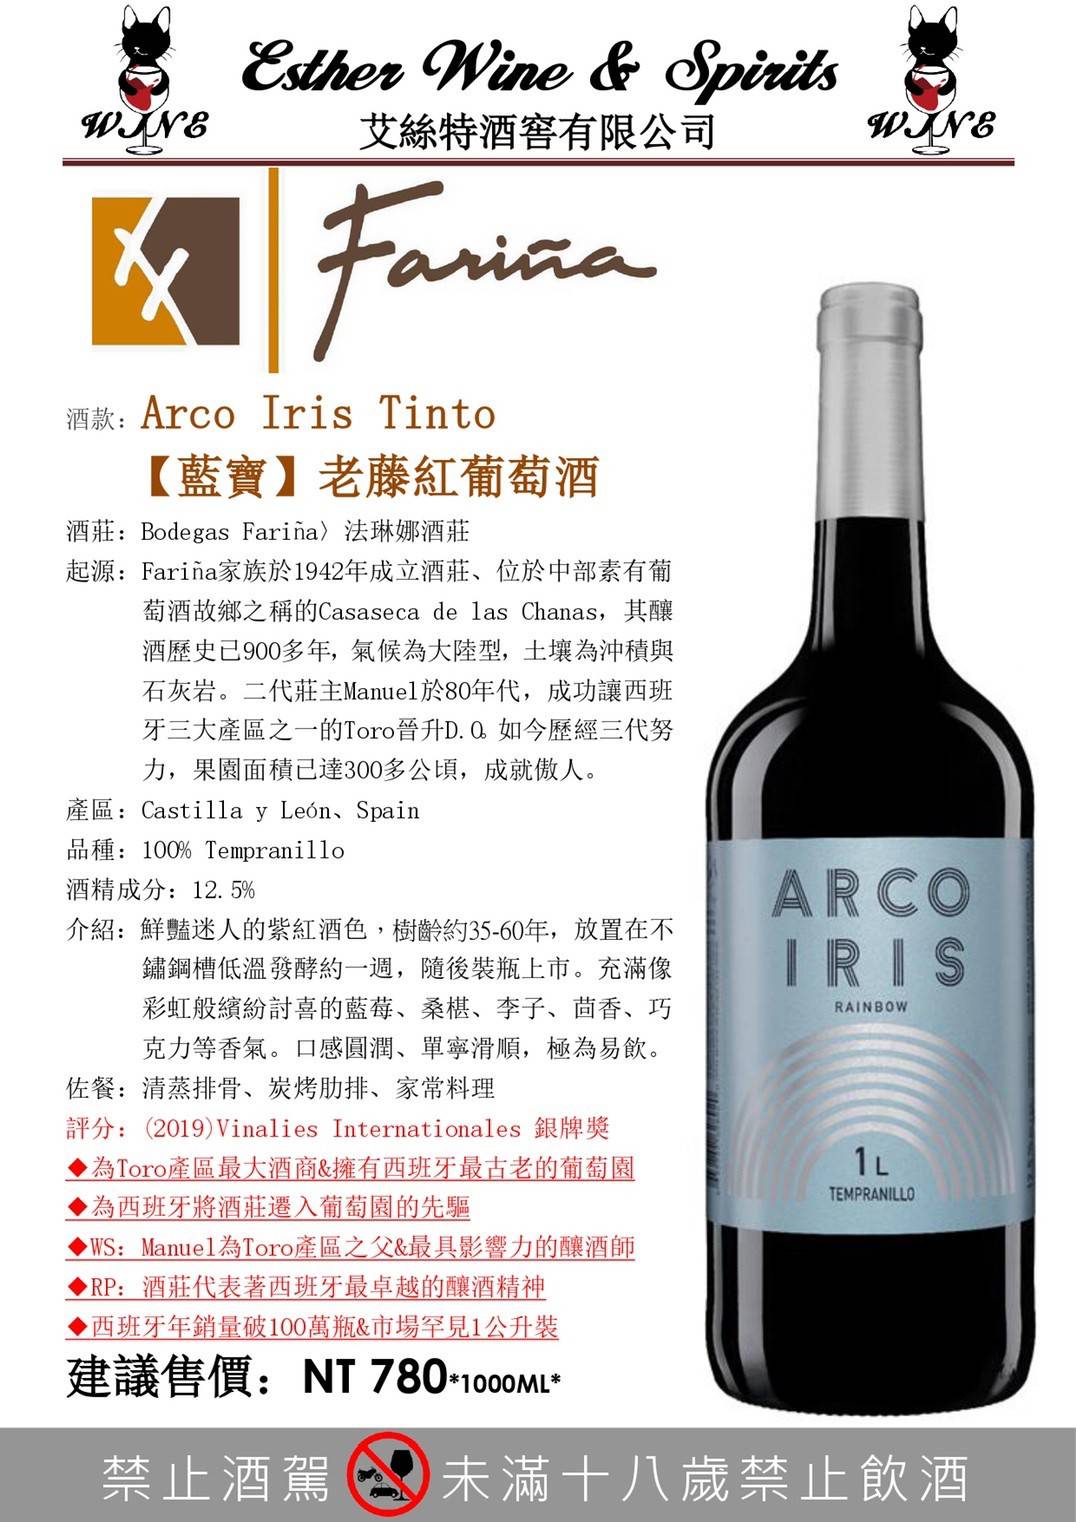 西班牙 藍寶 老藤紅葡萄酒 2019 Arco Iris Tinto    1L / 6入    &690